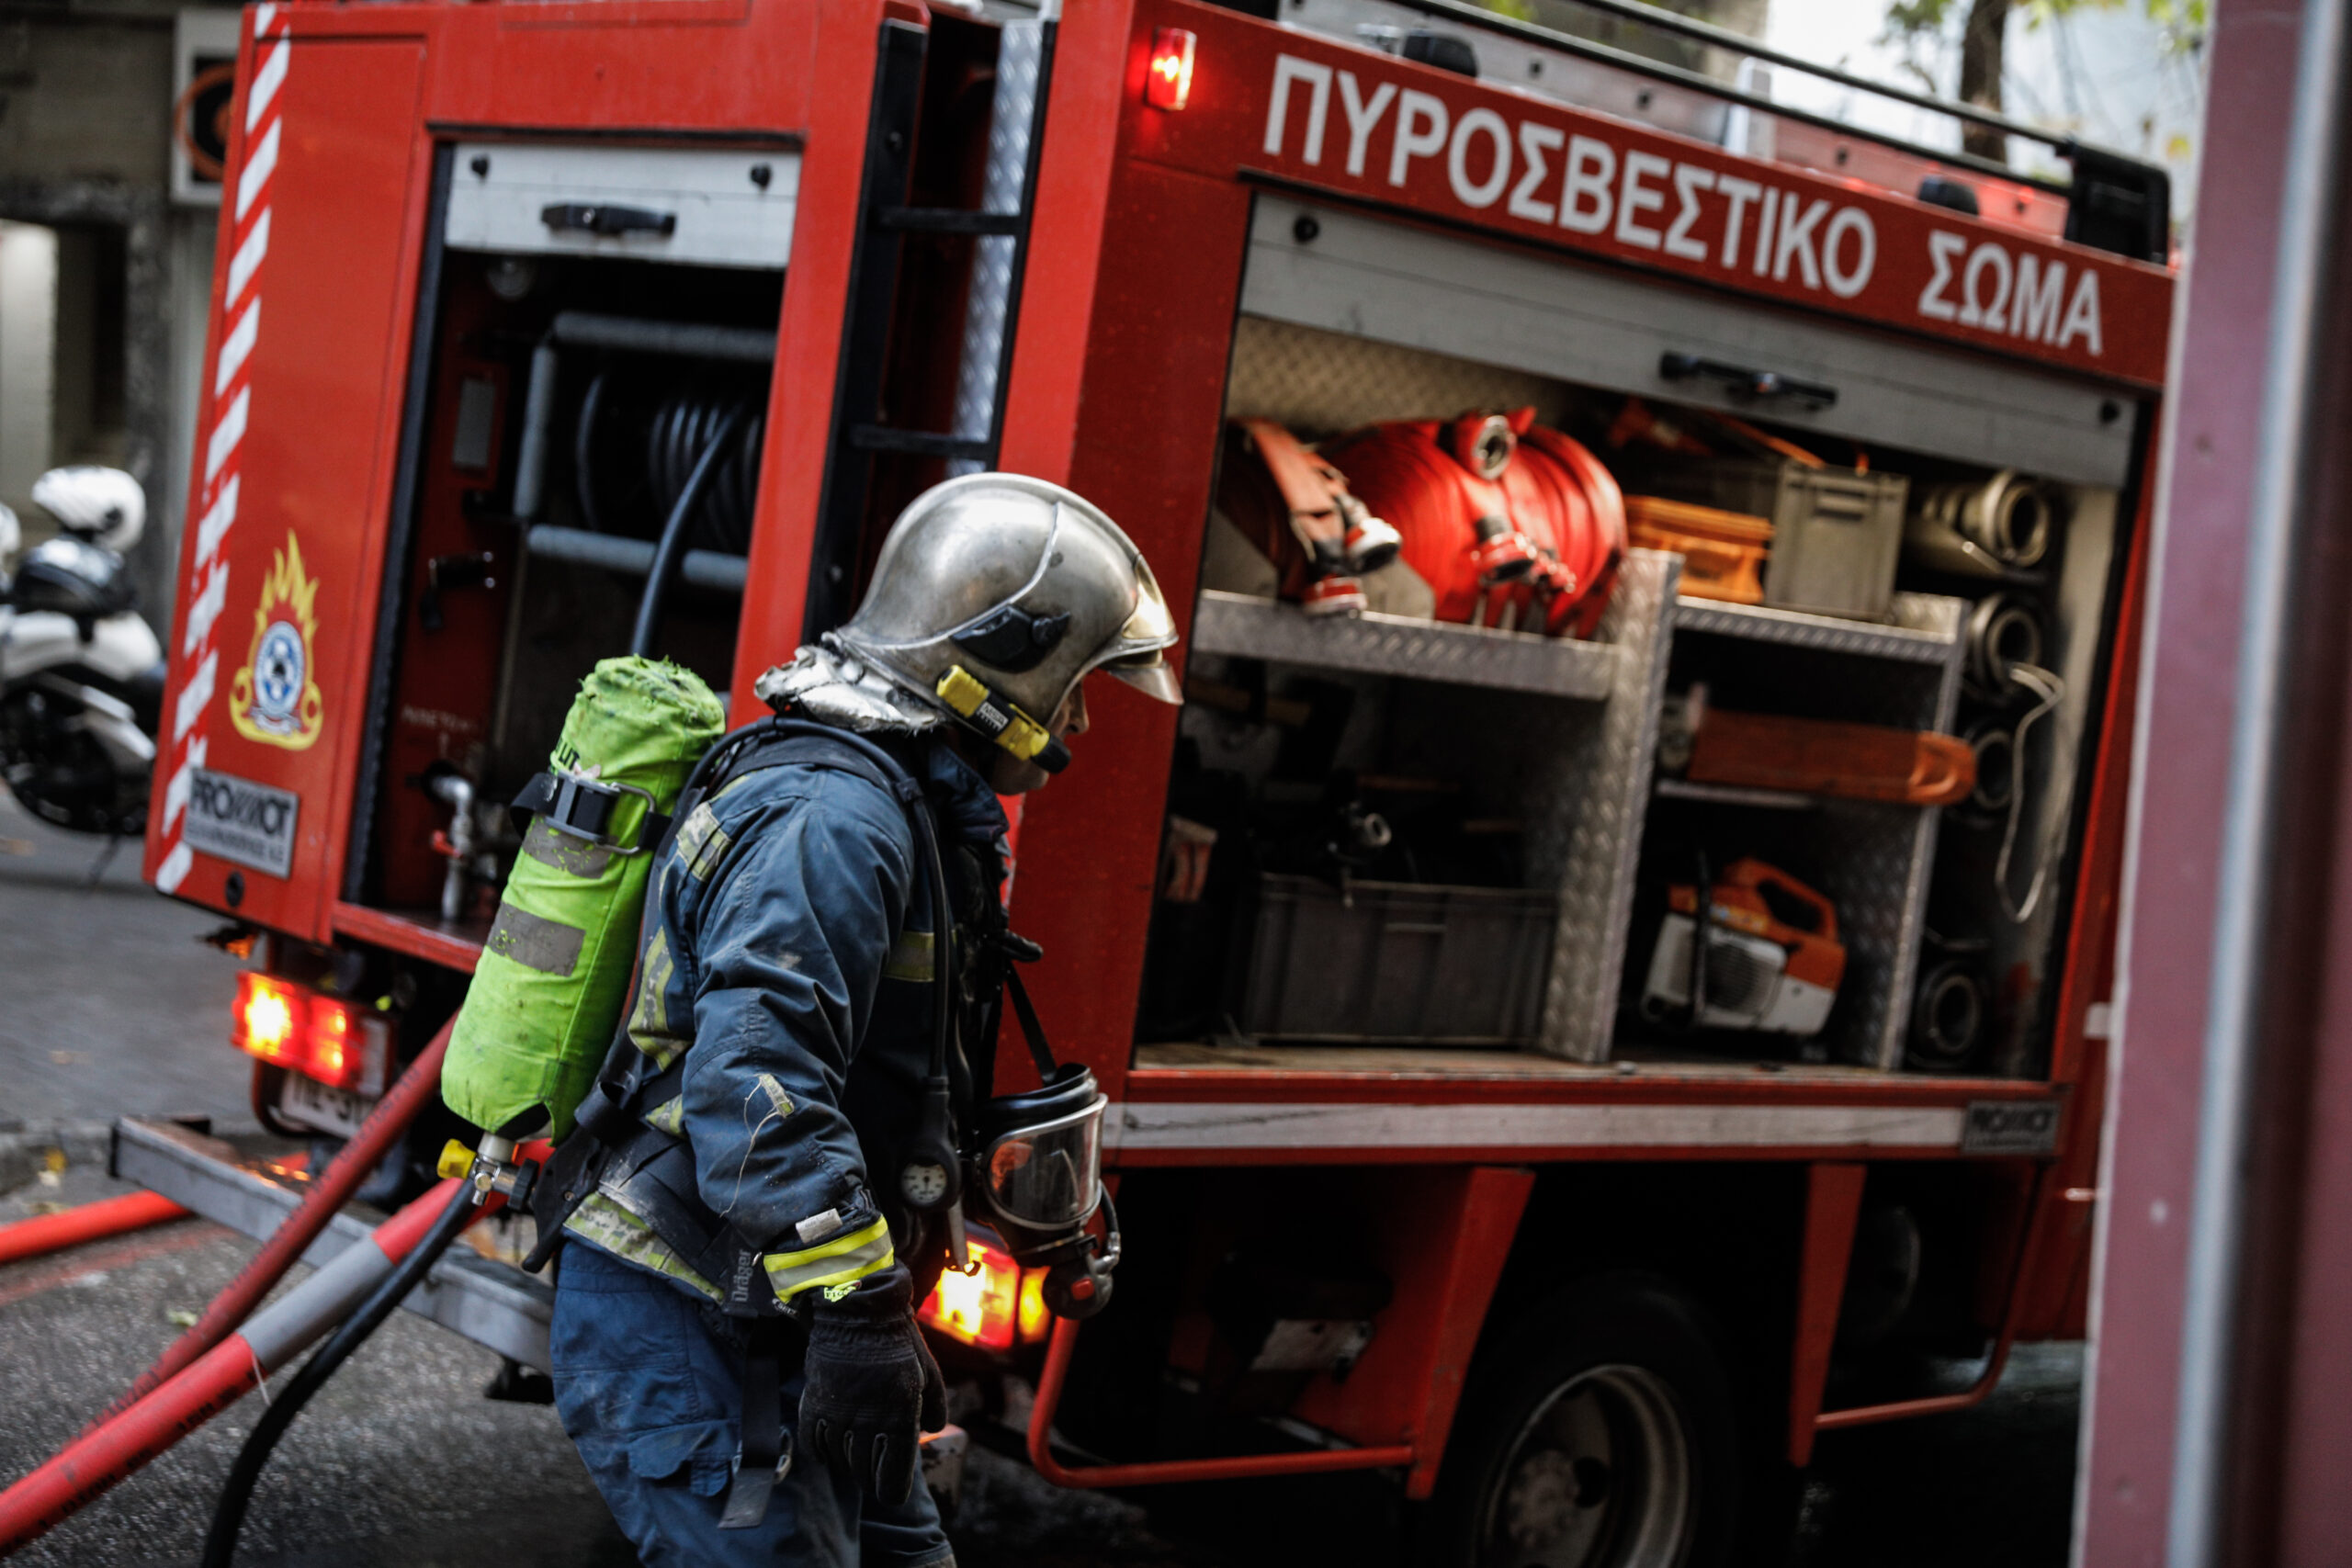 Θεσσαλονίκη: Φωτιά σε κάδο απορριμμάτων στο Καπάνι